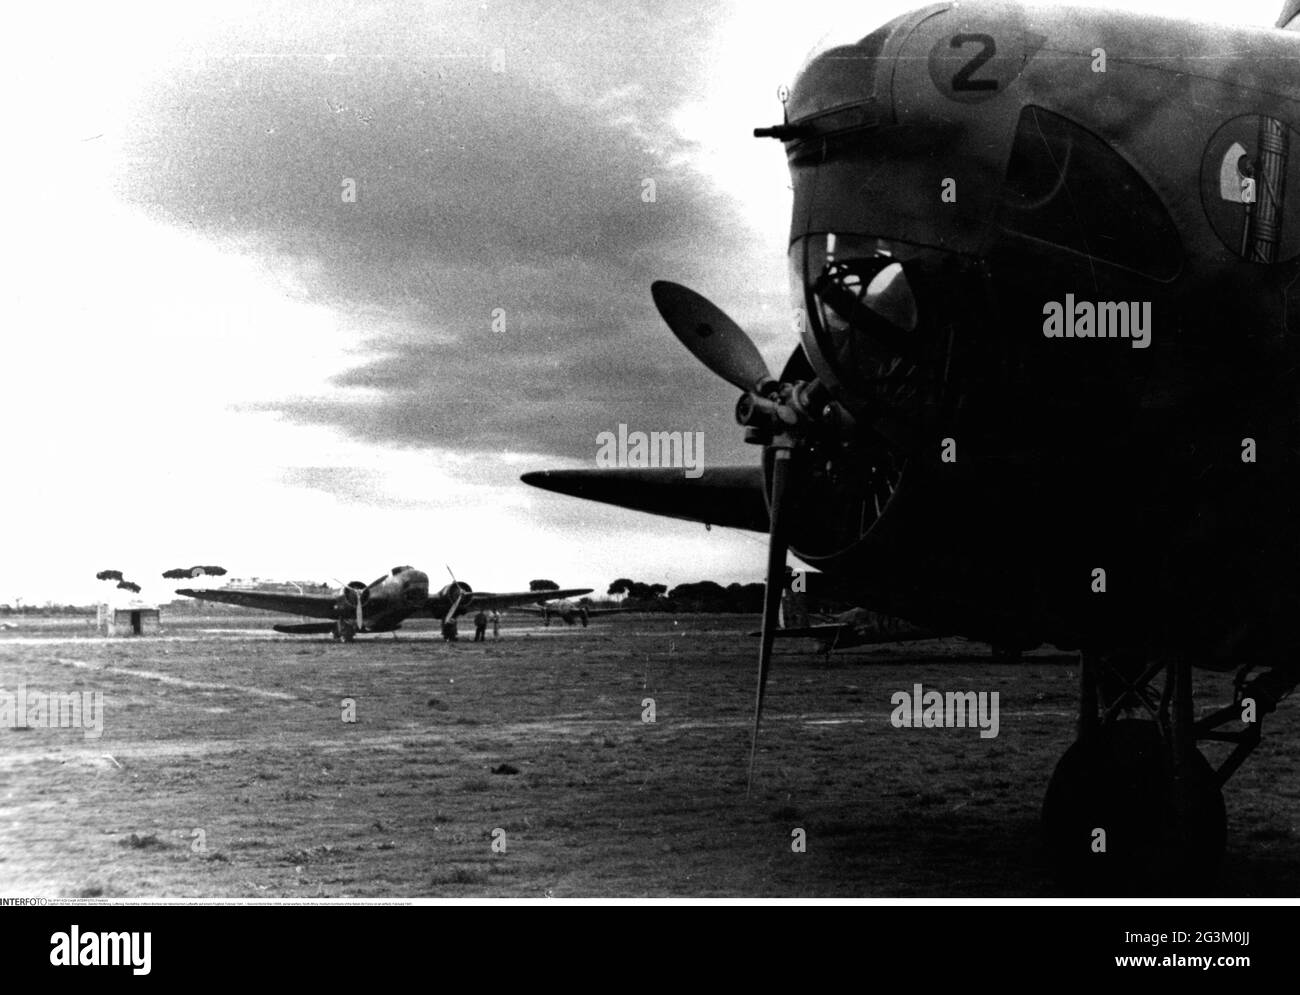 Zweiter Weltkrieg/2. Weltkrieg, Luftkrieg, Nordafrika, mittlere Bomber der italienischen Luftwaffe auf einem Flugplatz, Februar 1941, NUR REDAKTIONELLE VERWENDUNG Stockfoto